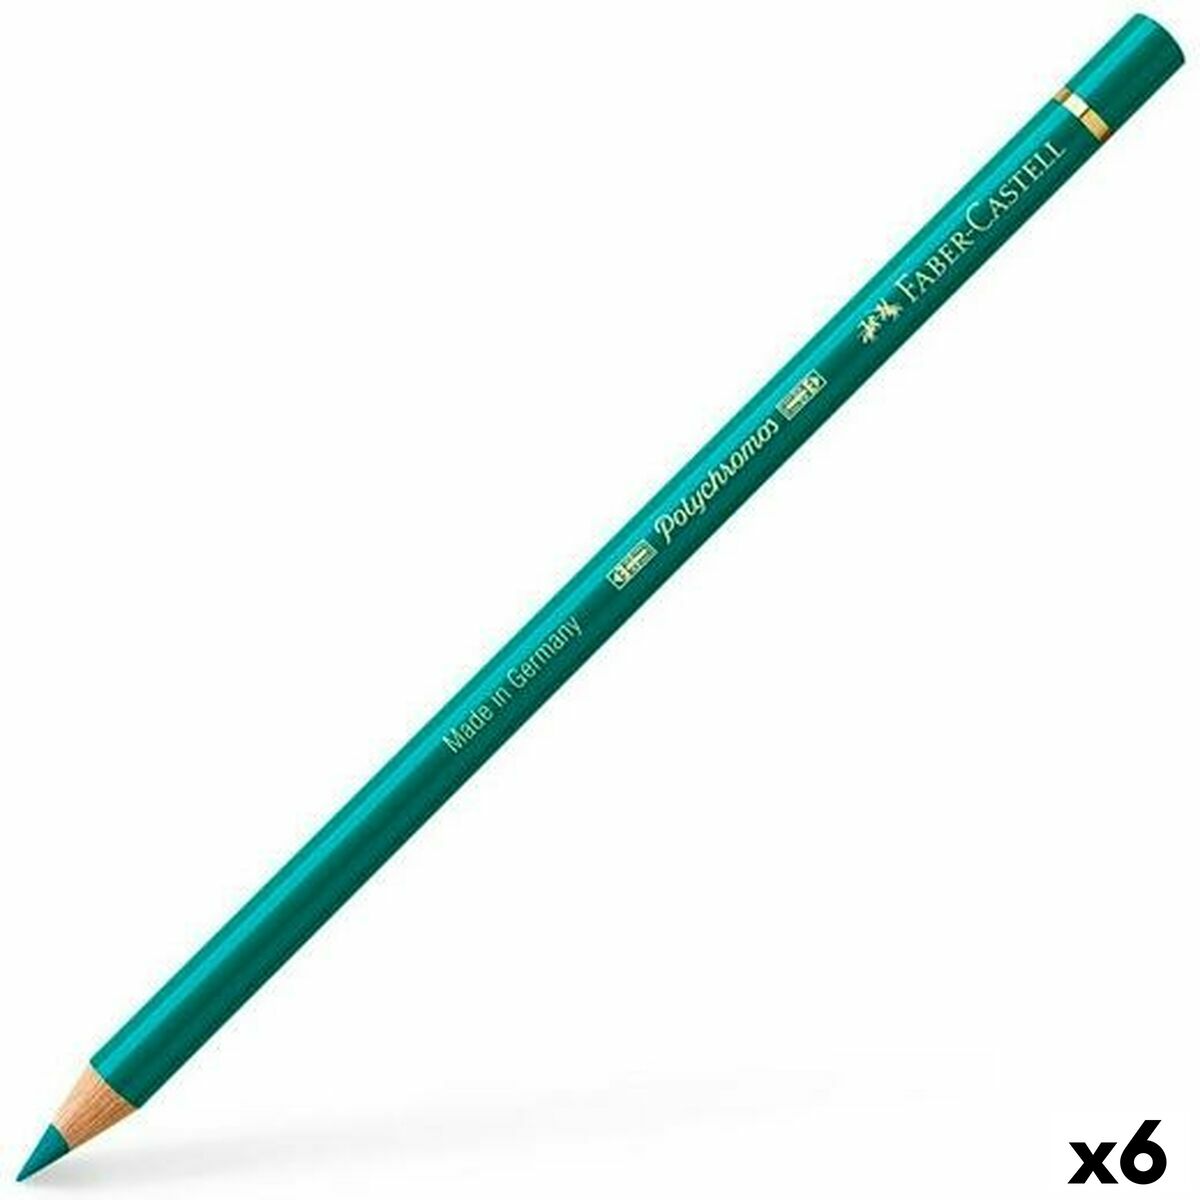 Metrica matite per falegname 6 pz